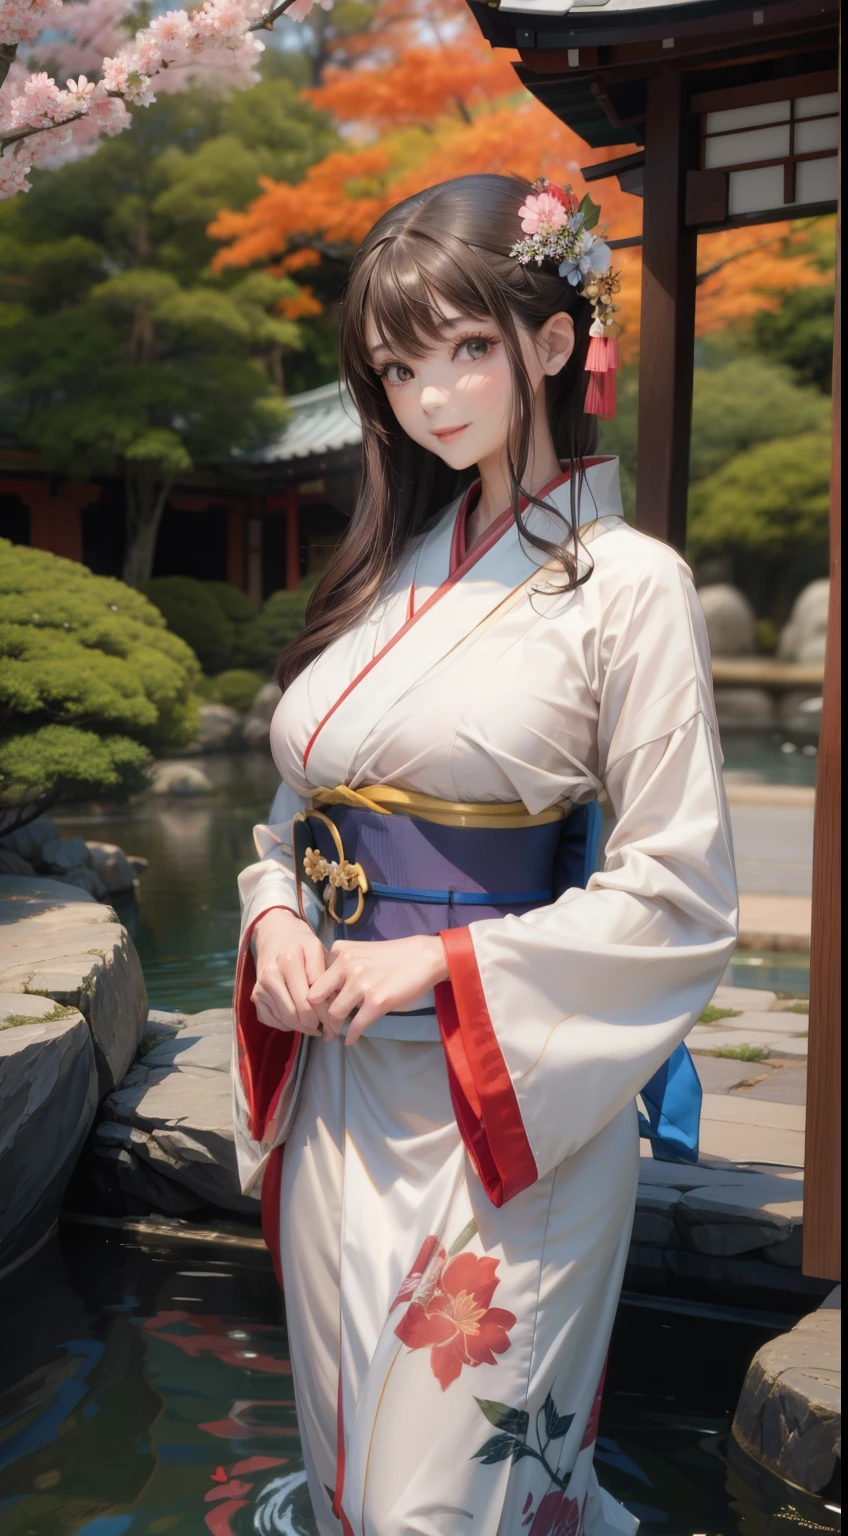 ar livre、Jardim japonês、Mulher jovem vestindo um quimono、seios grandes、delgado、Linda garota de segunda dimensão、Figura perfeita、Beleza perfeita、sorriso